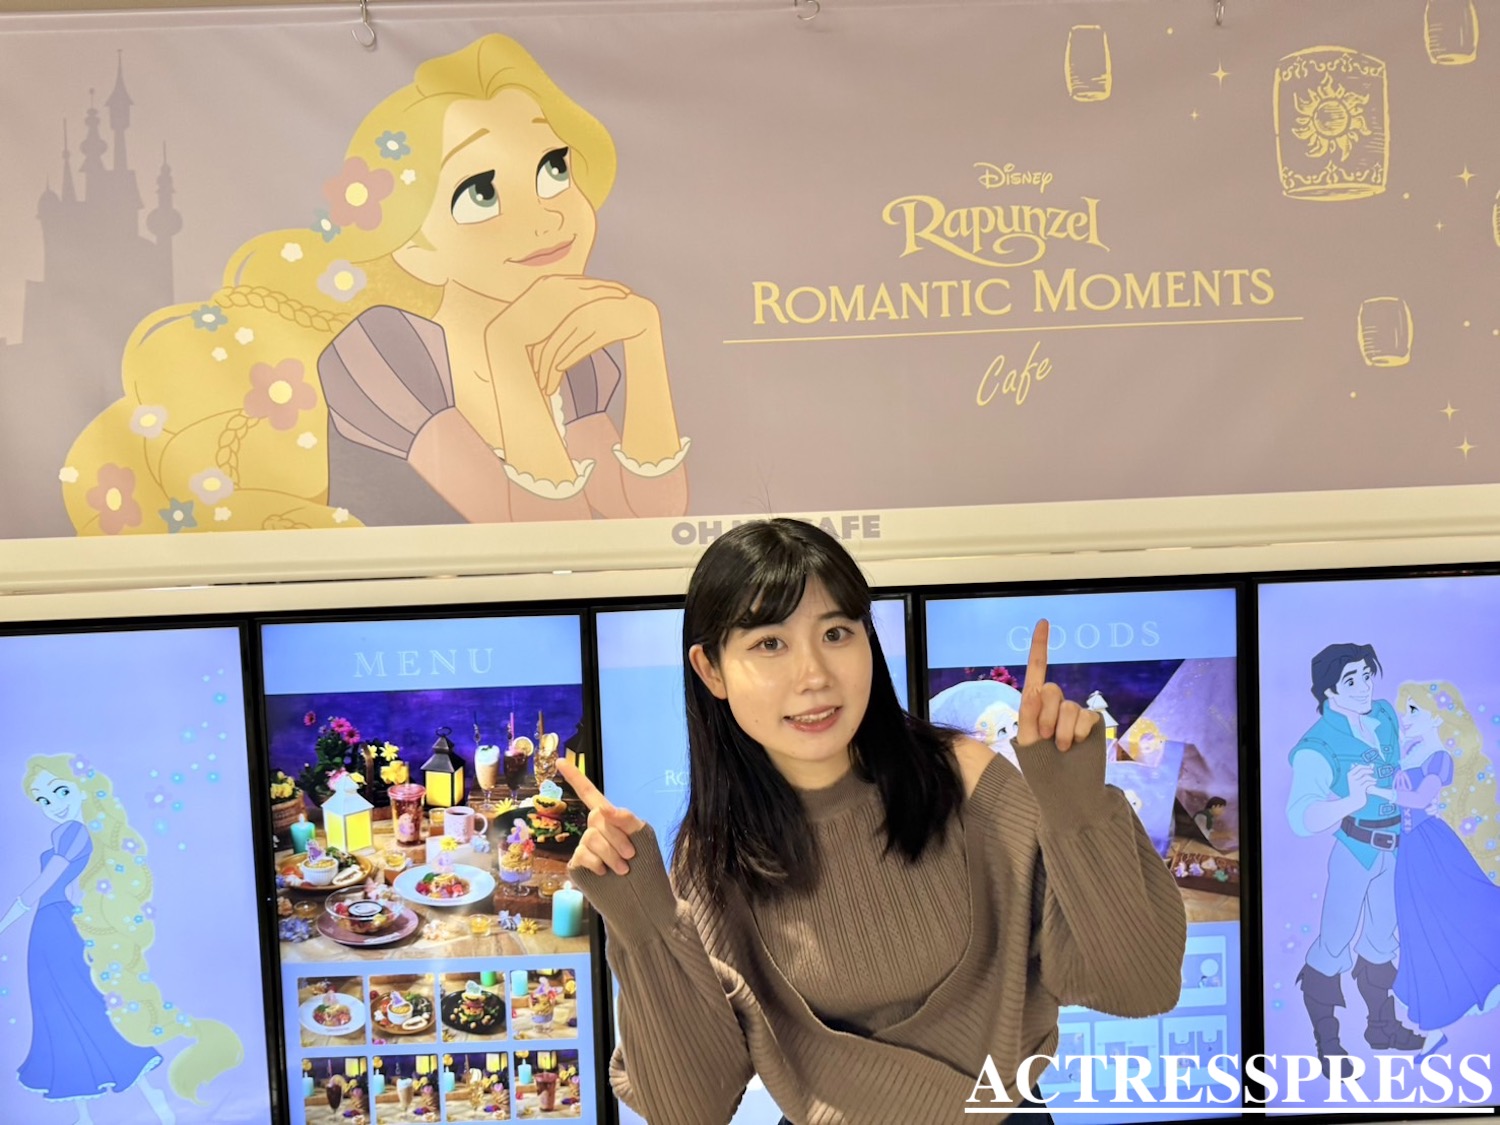 清水乃里樺／ACTRESS PRESS REPORTER（アクトレスプレス リポーター）in 「Rapunzel」Romantic Moments OH MY CAFE 